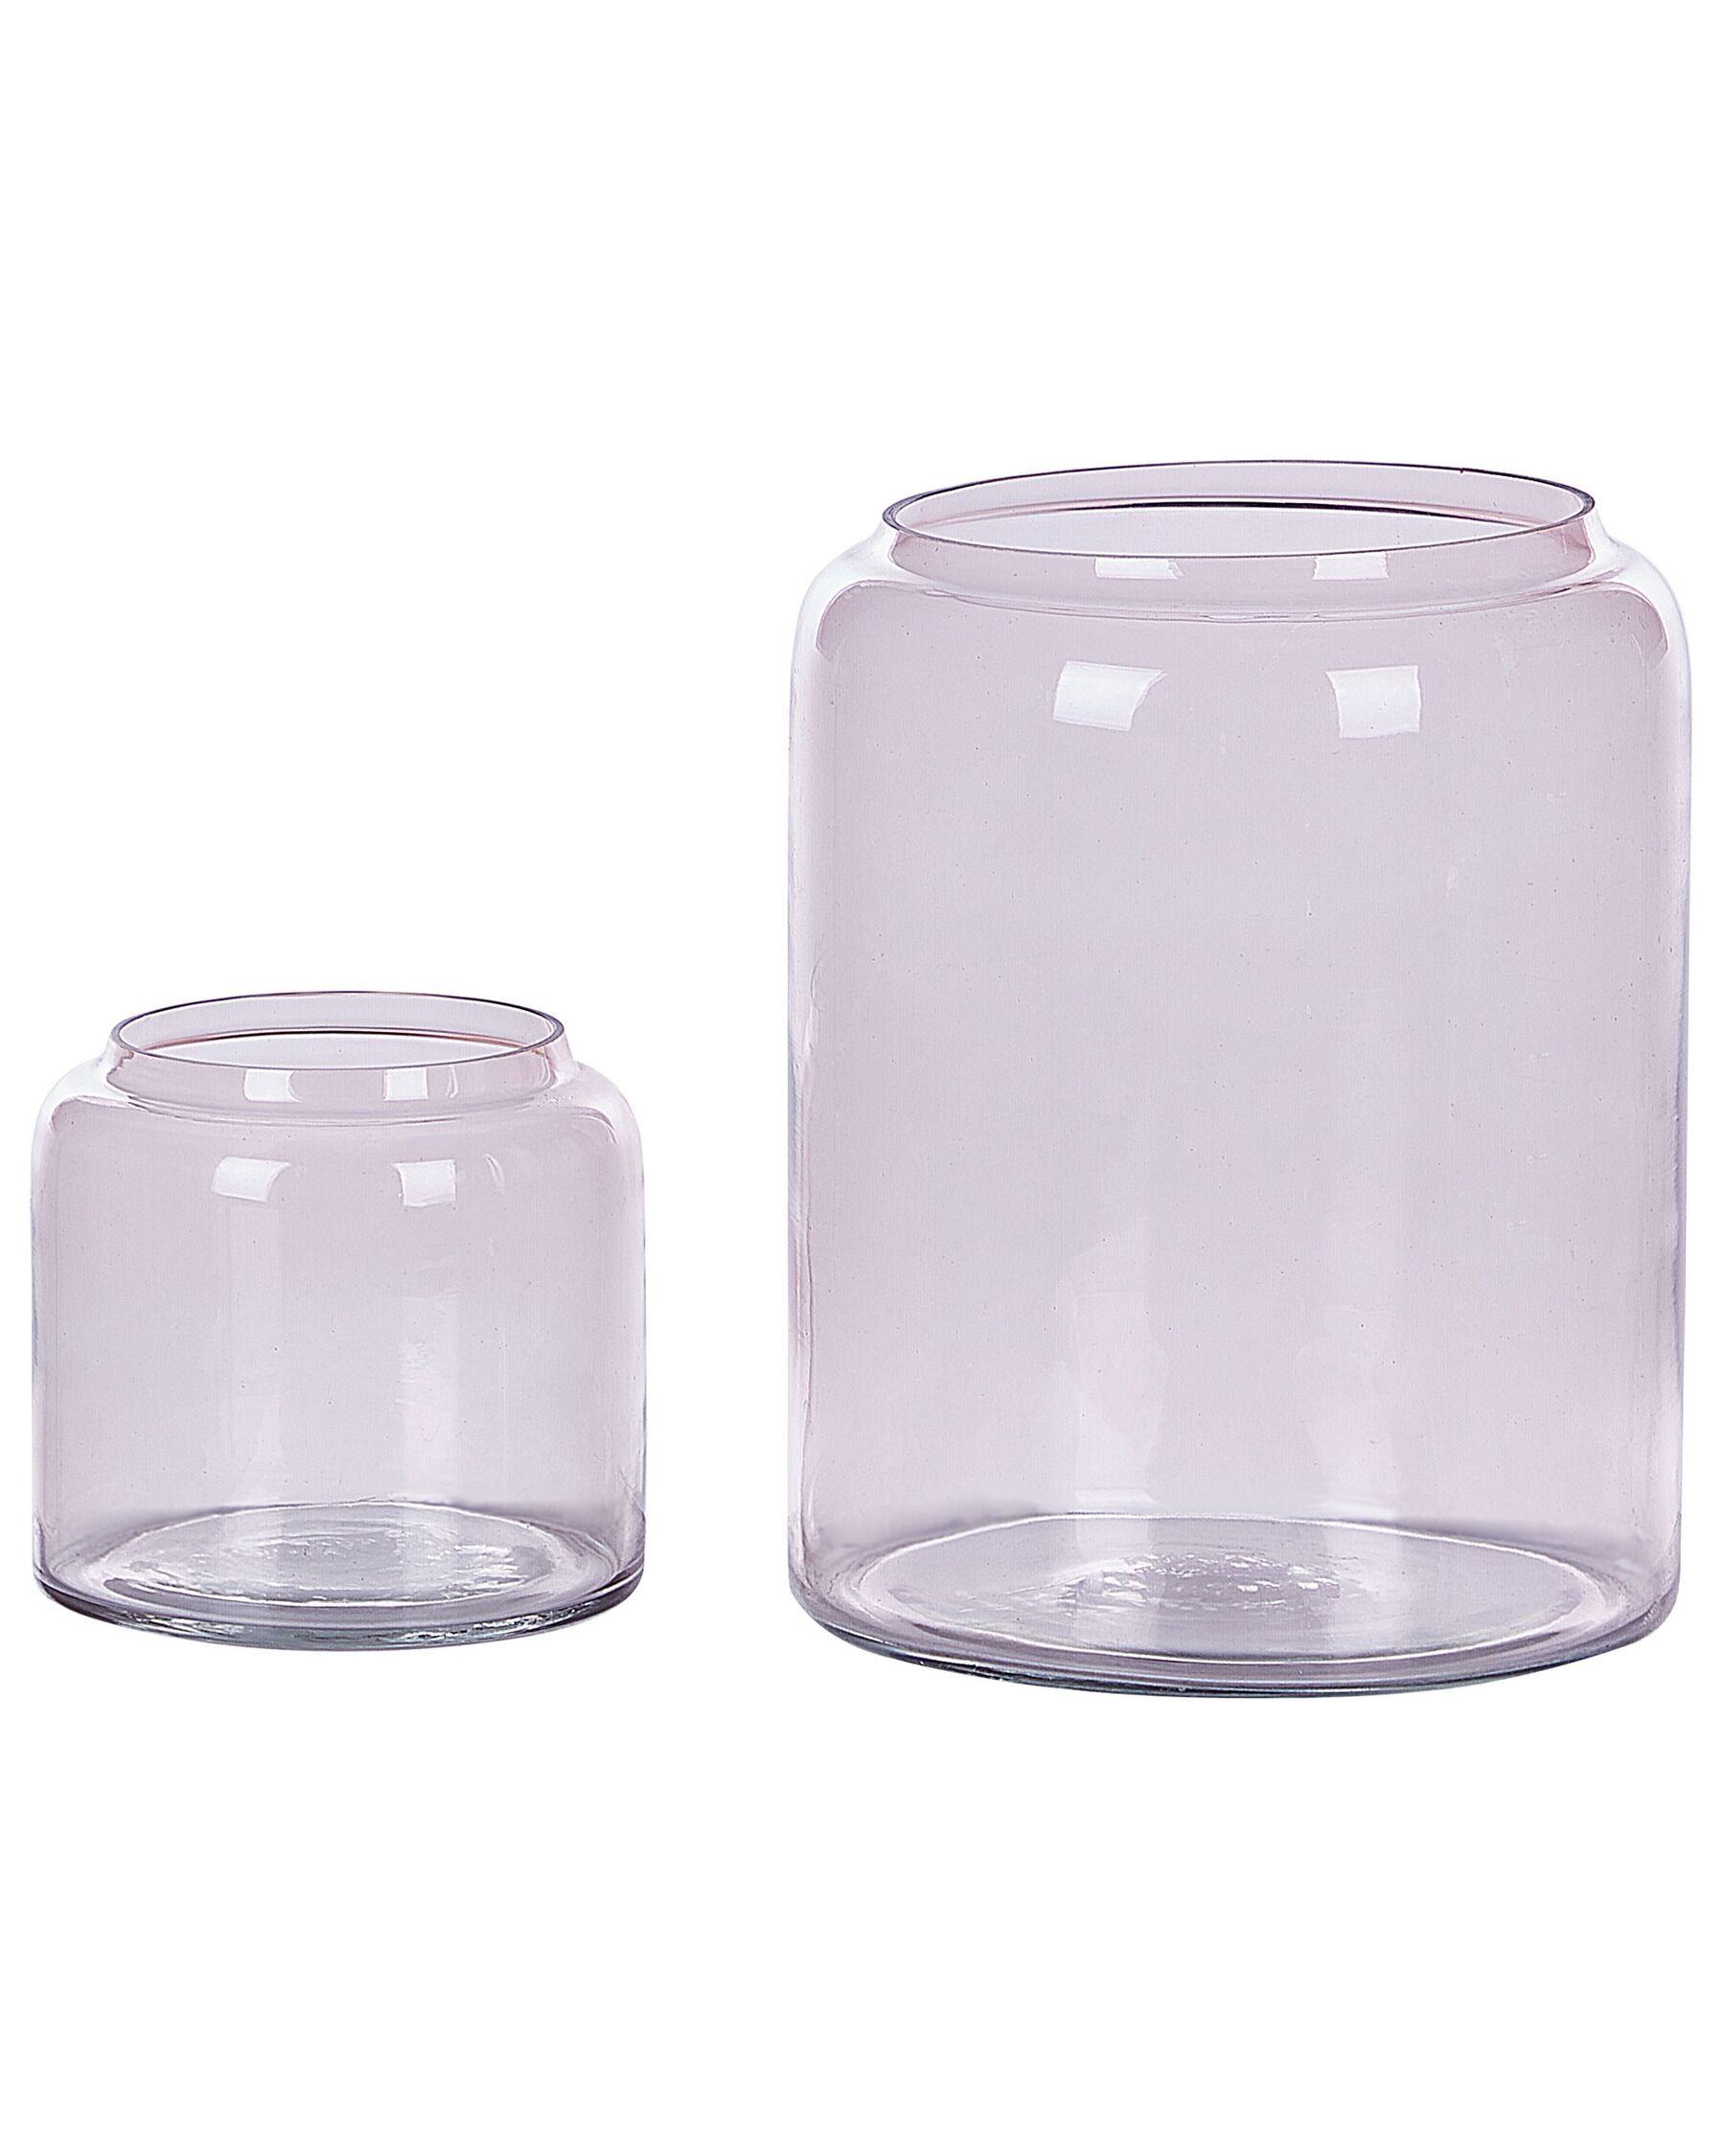 Komplet 2 wazonów dekoracyjnych szklany 20/11 cm różowy RASAM_823704